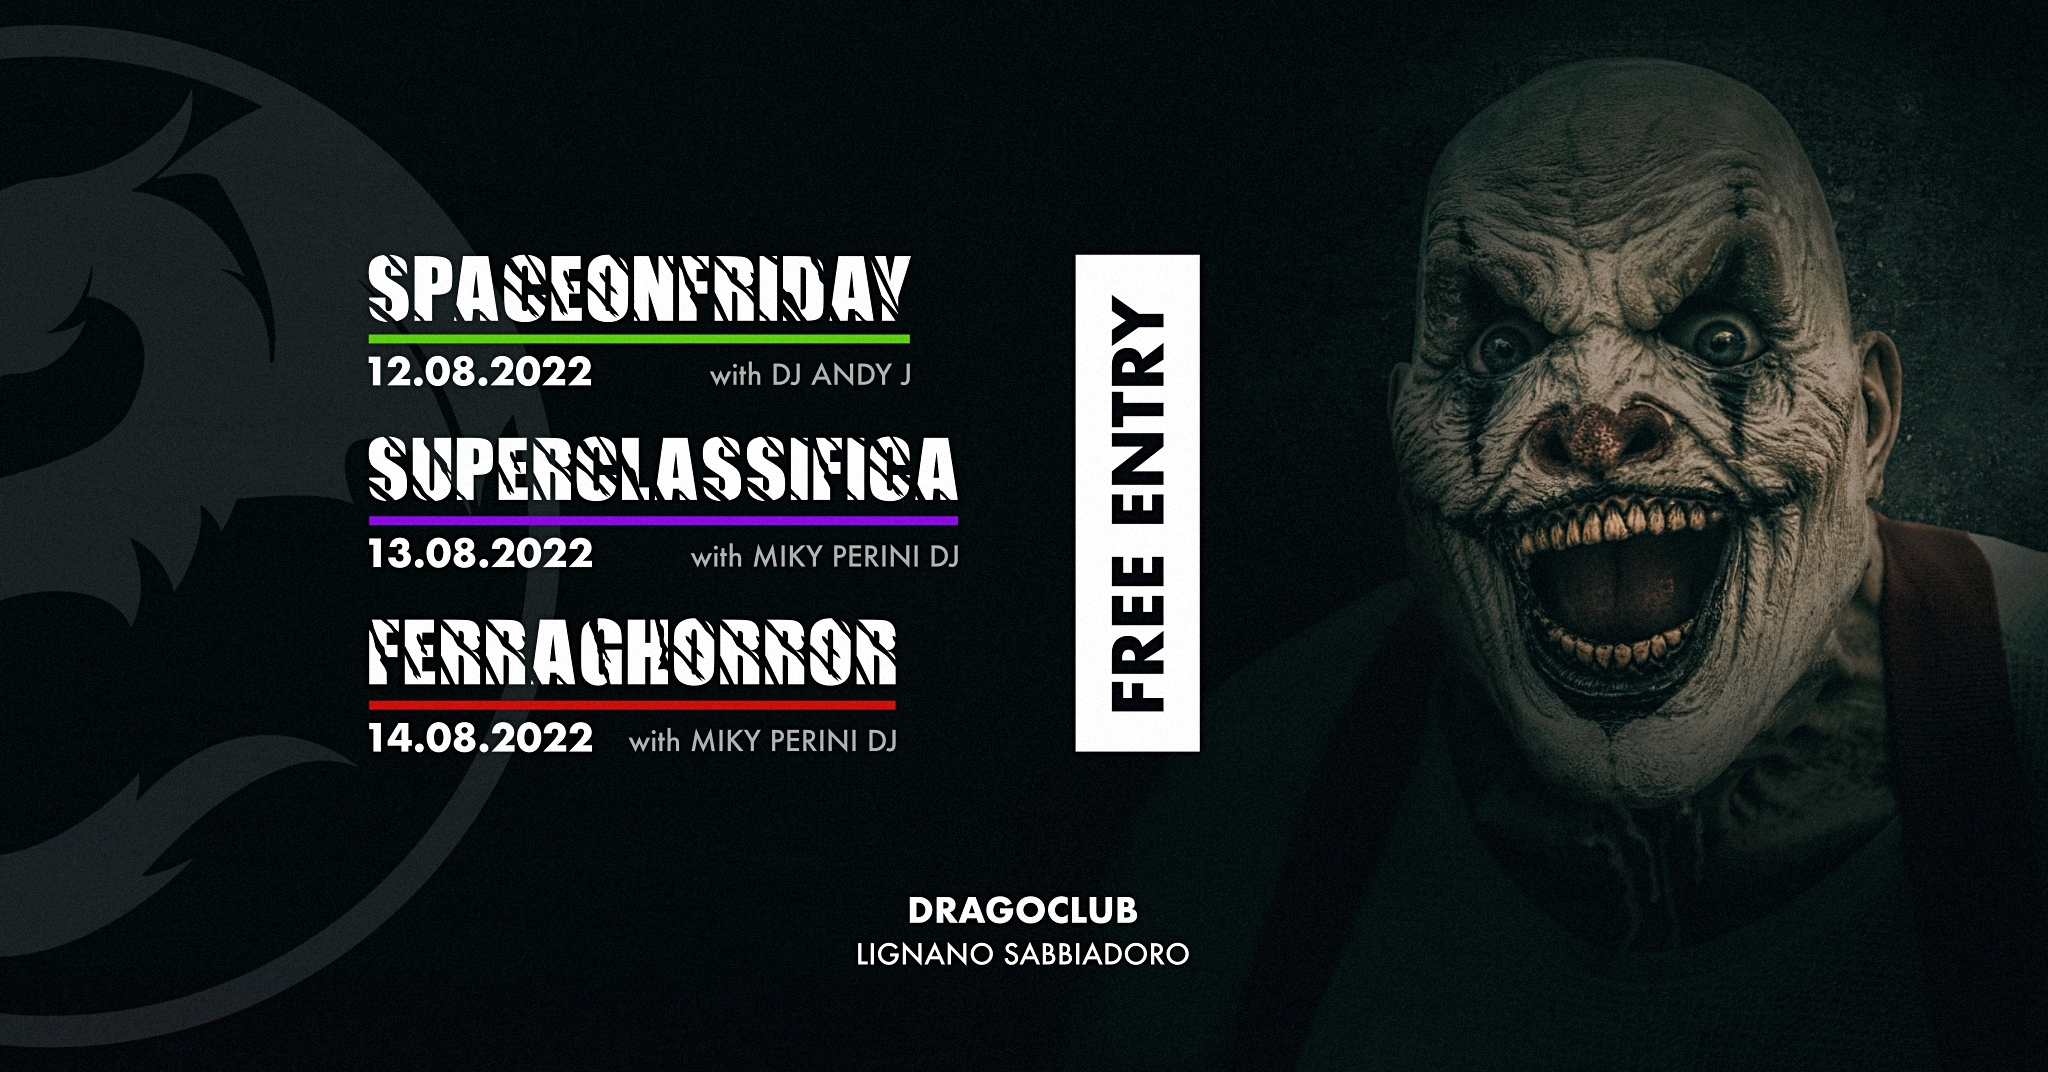 Ferragosto Weekend - Free Disco Drago Party